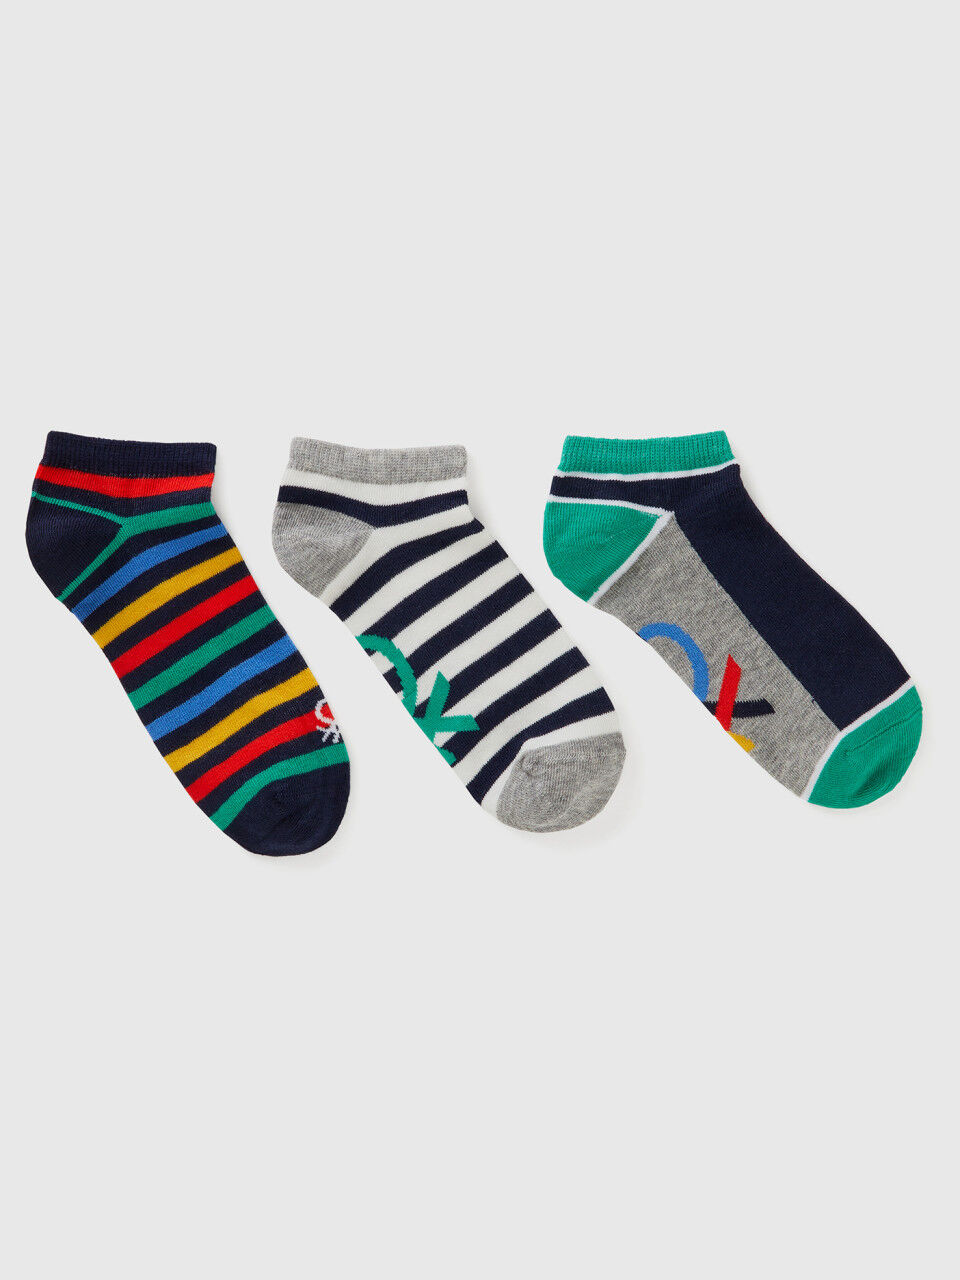 Three pairs of short socks